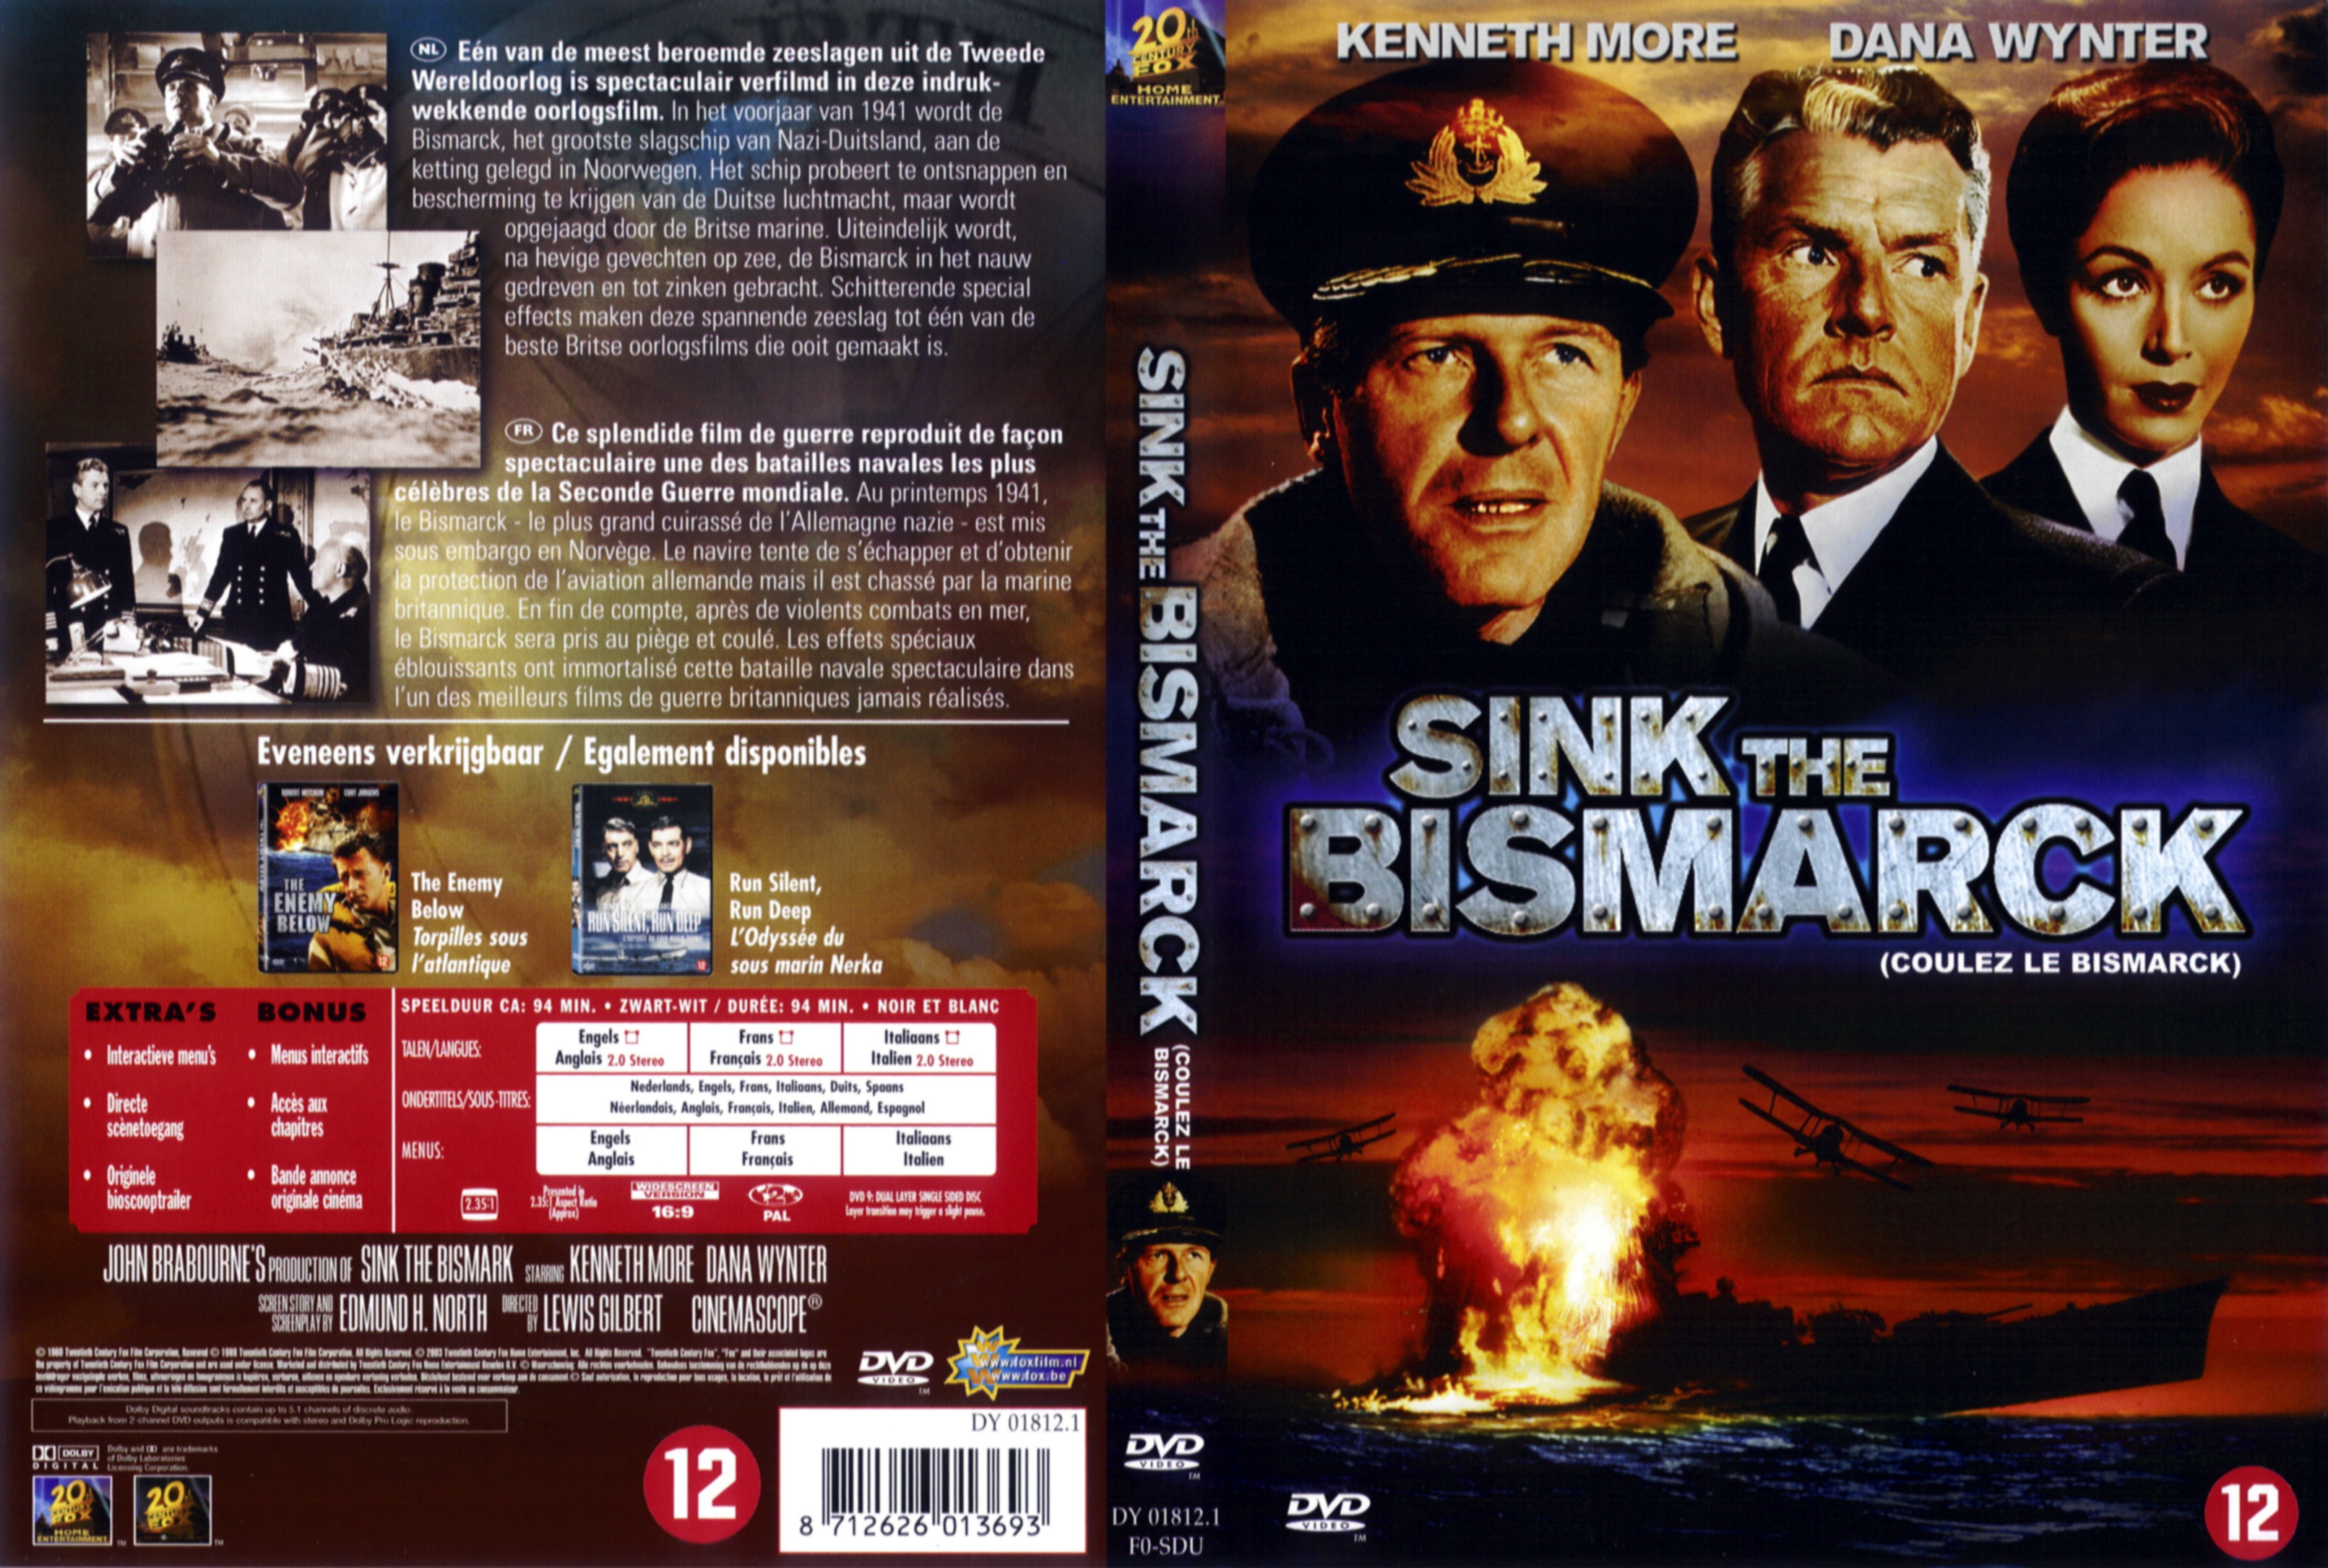 Jaquette DVD Coulez le Bismarck